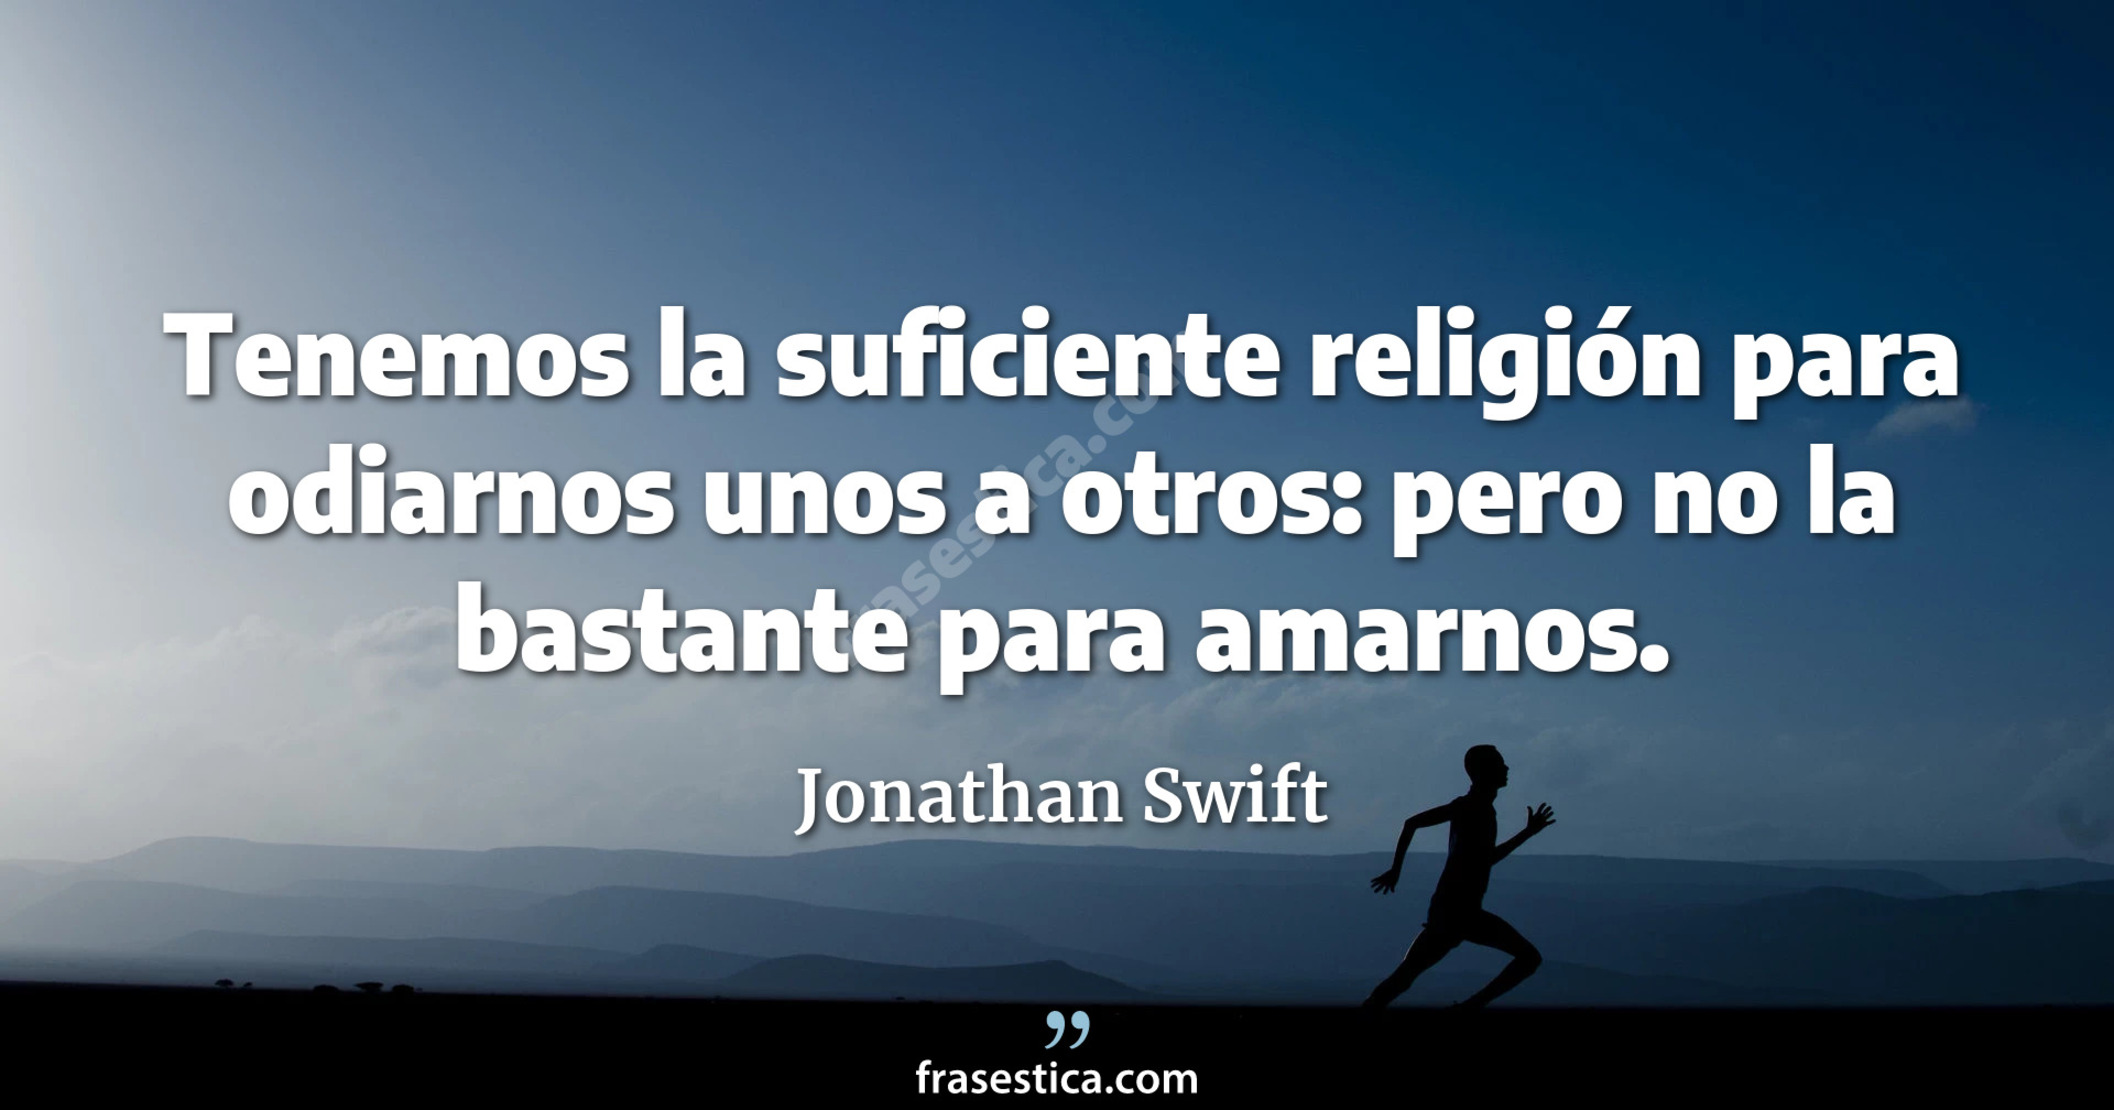 Tenemos la suficiente religión para odiarnos unos a otros: pero no la bastante para amarnos. - Jonathan Swift